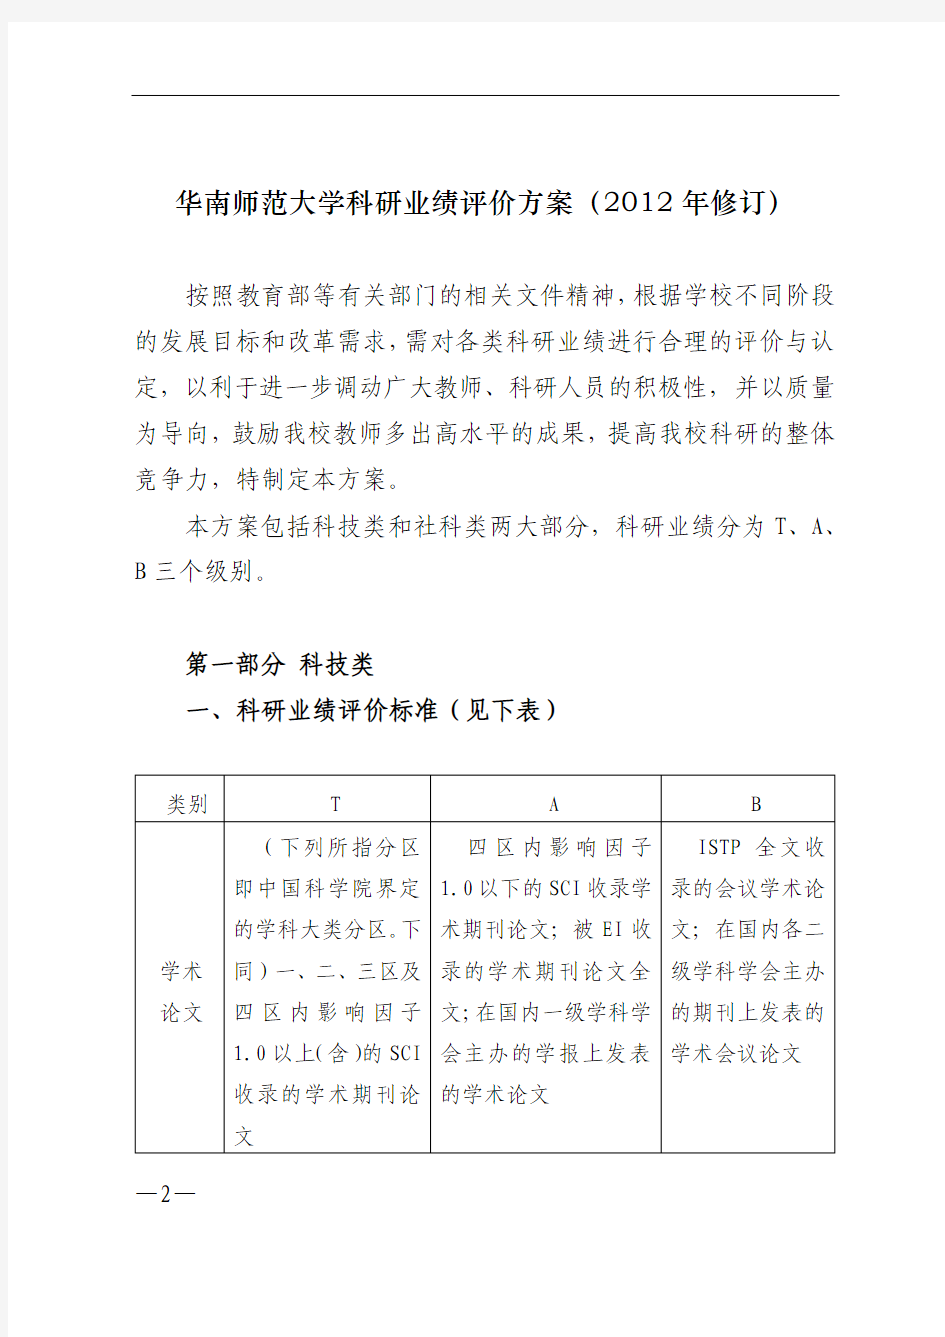 华南师范大学科研业绩评价方案(2012年修订)